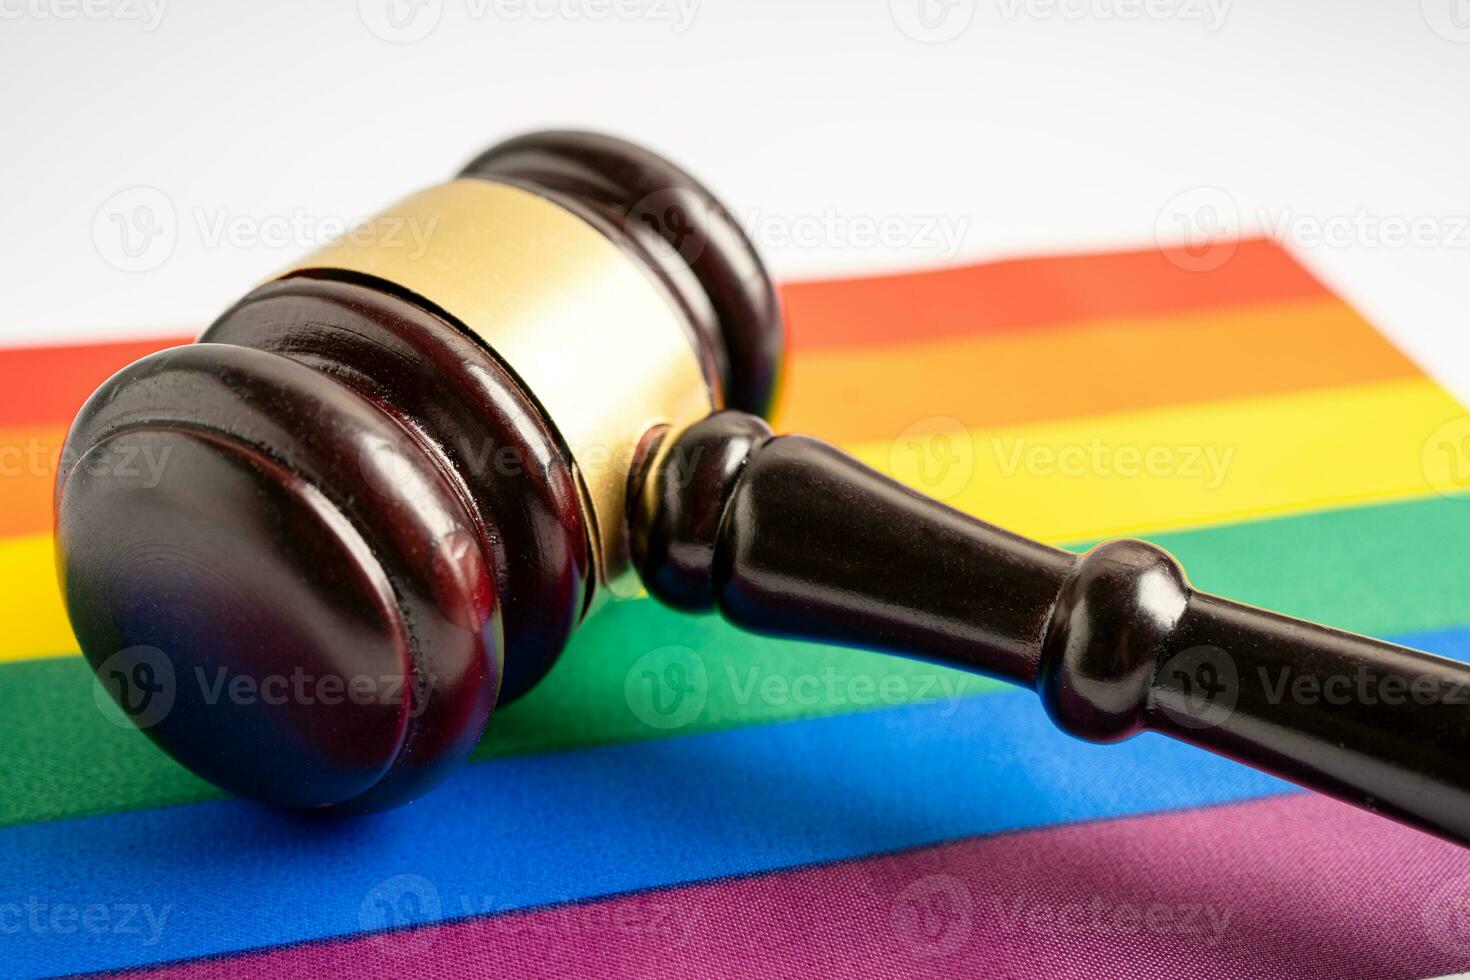 martelletto per avvocato giudice sulla bandiera arcobaleno, simbolo del mese dell'orgoglio lgbt celebra annualmente a giugno sociale di gay, lesbiche, bisessuali, transgender, diritti umani. foto